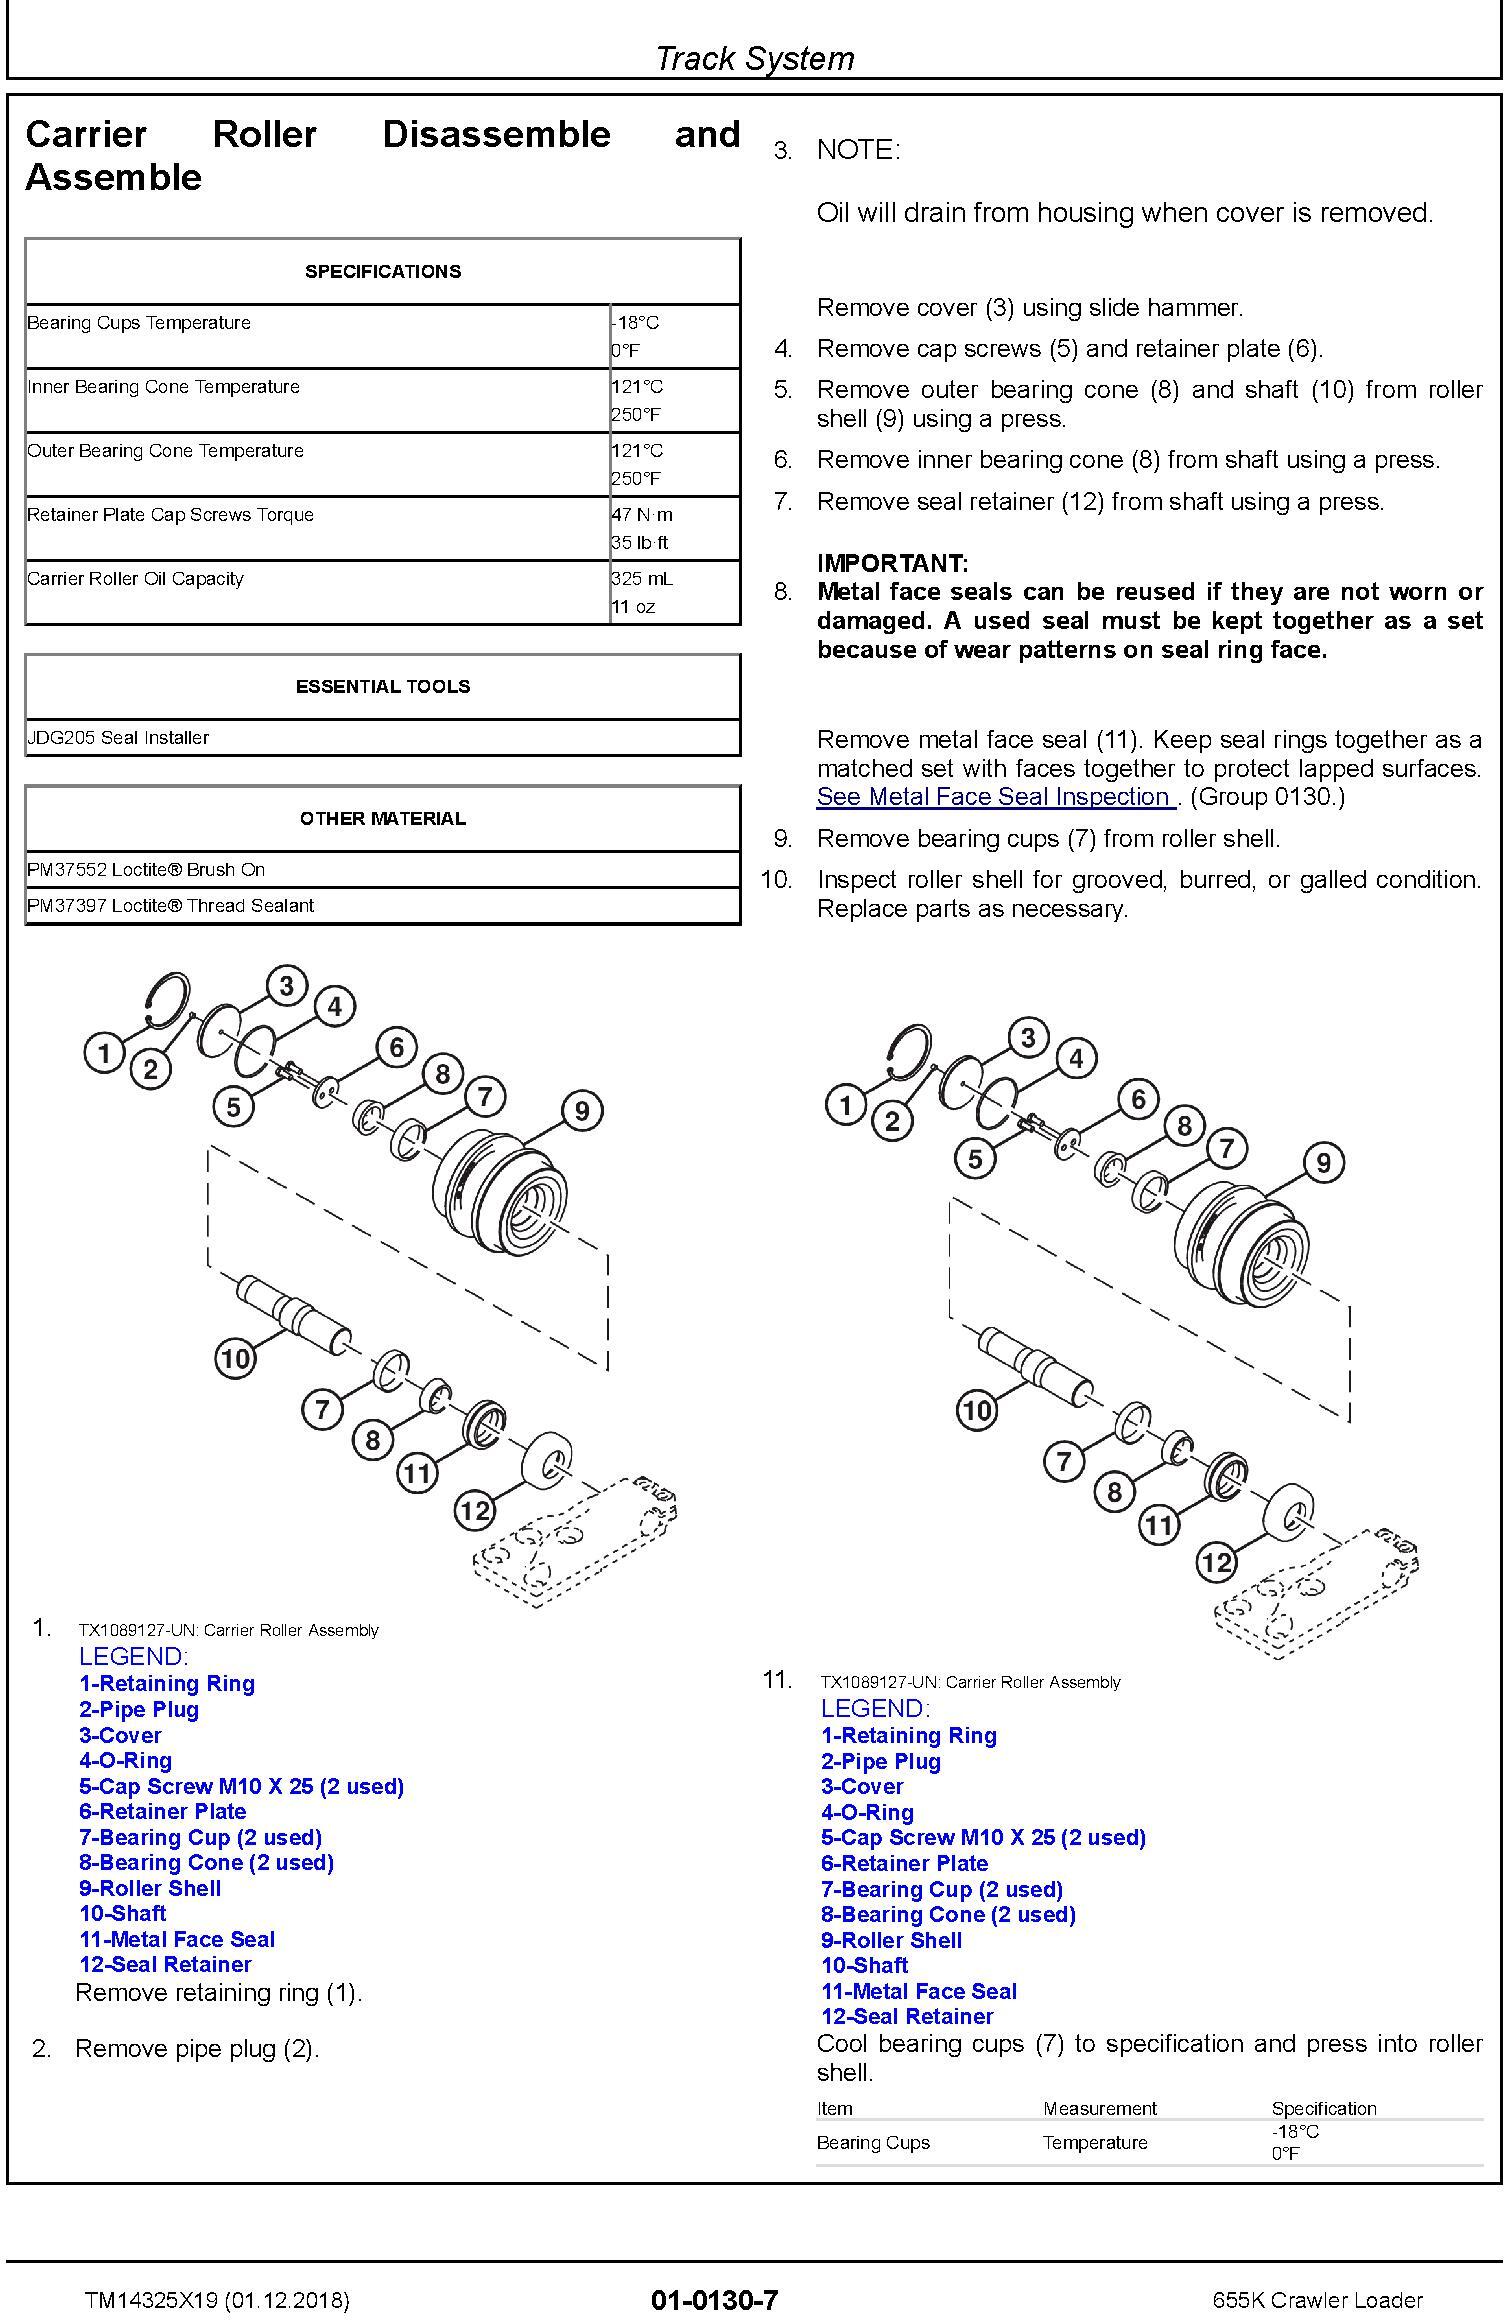 John Deere 655K Crawler Loader Repair Technical Manual (TM14325X19) - 1